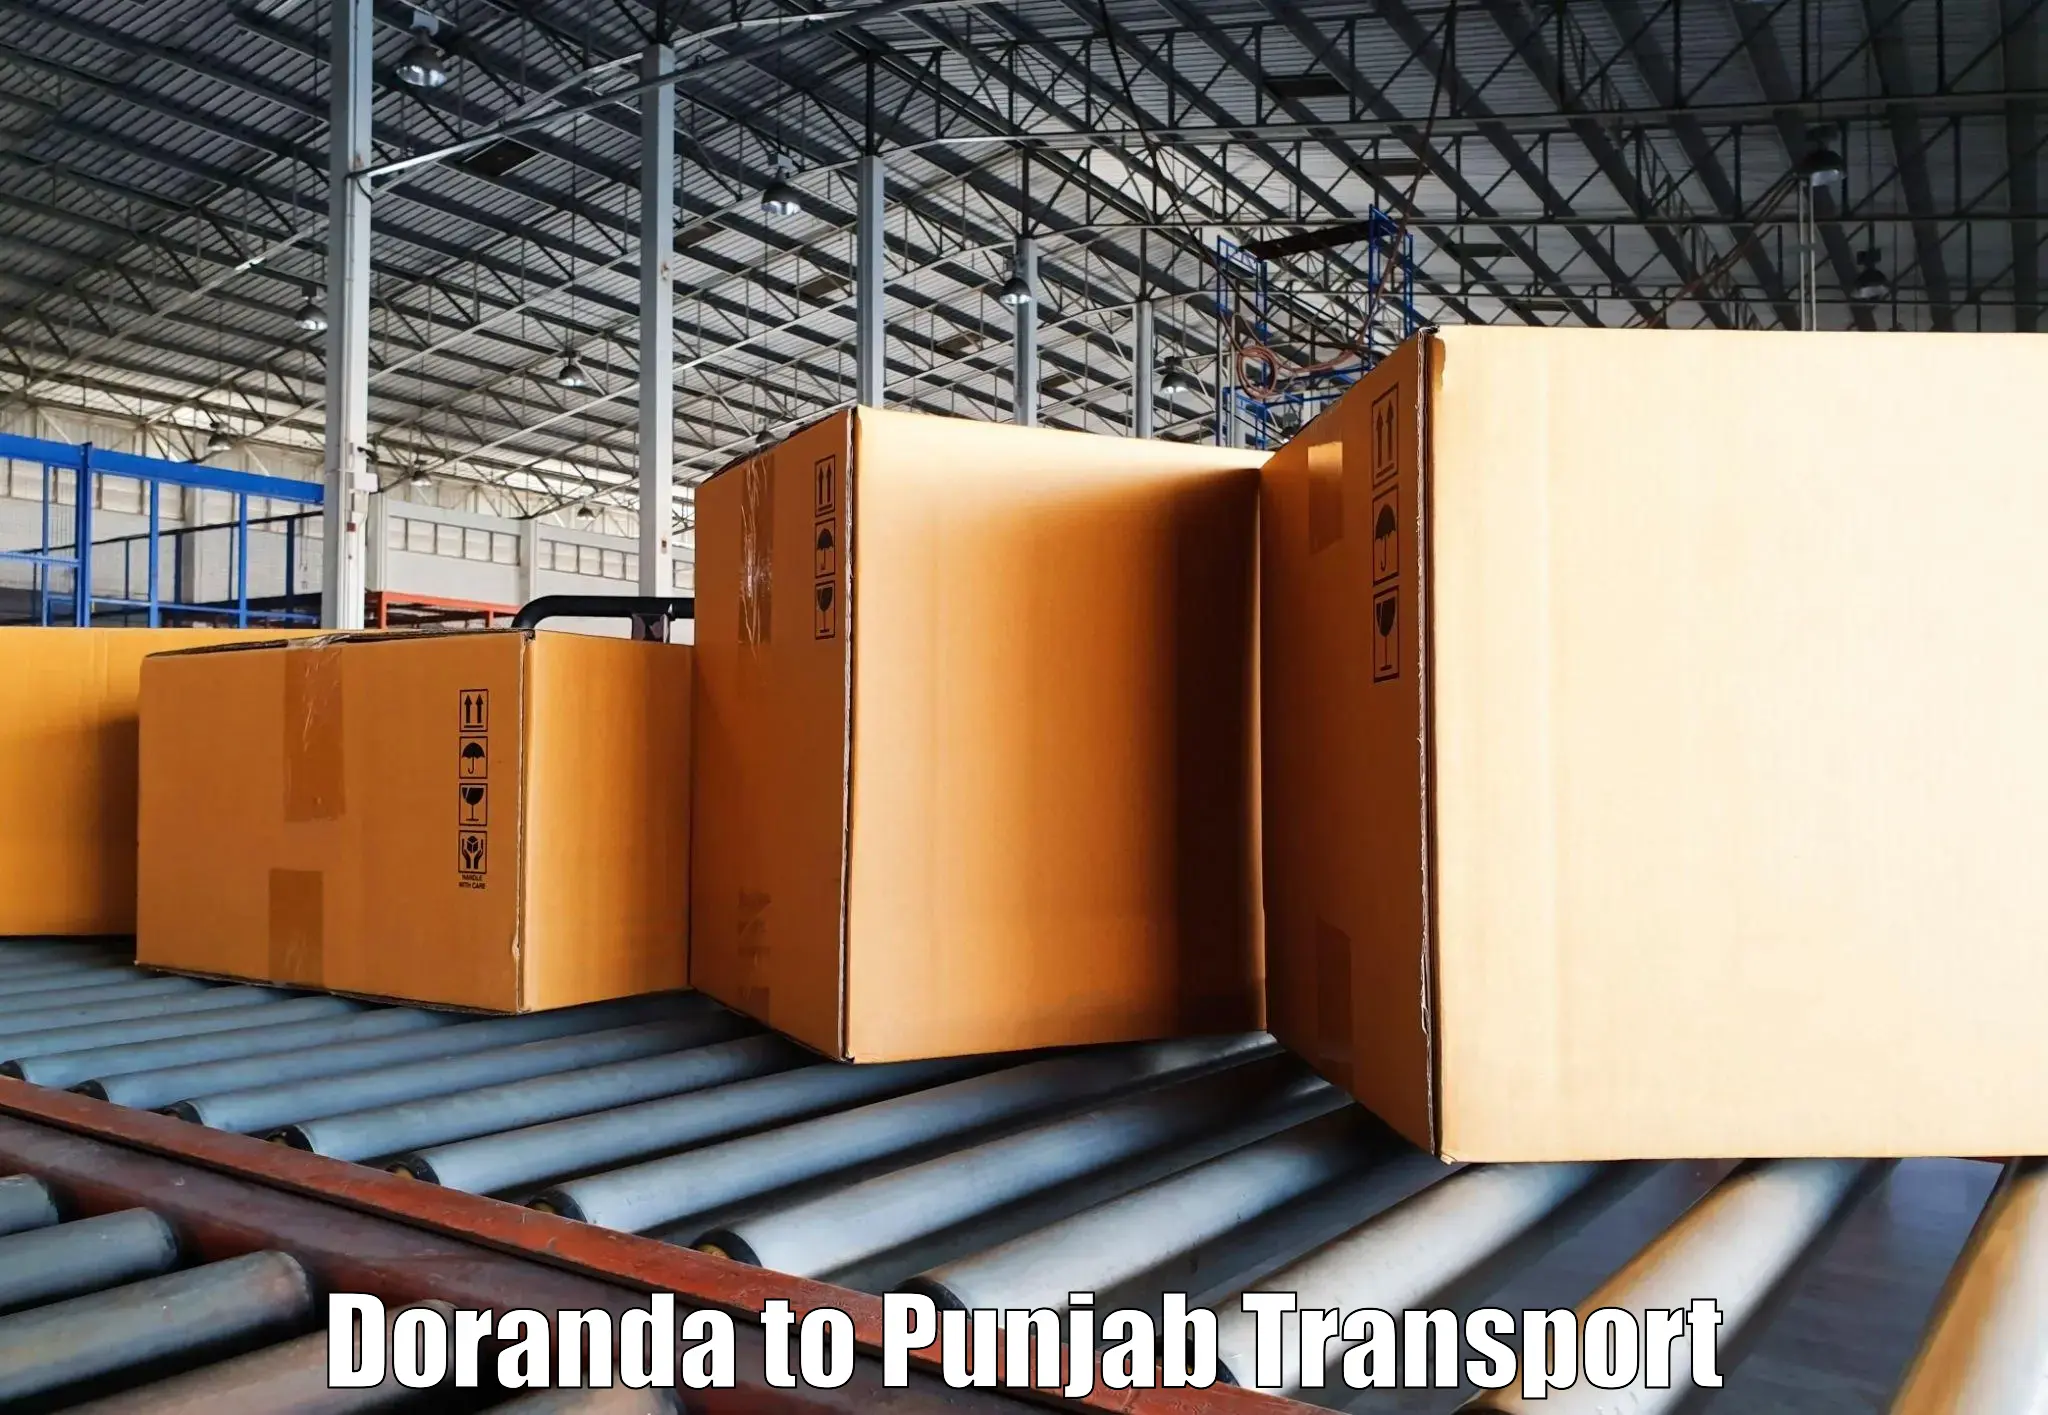 Transport in sharing Doranda to Dhilwan